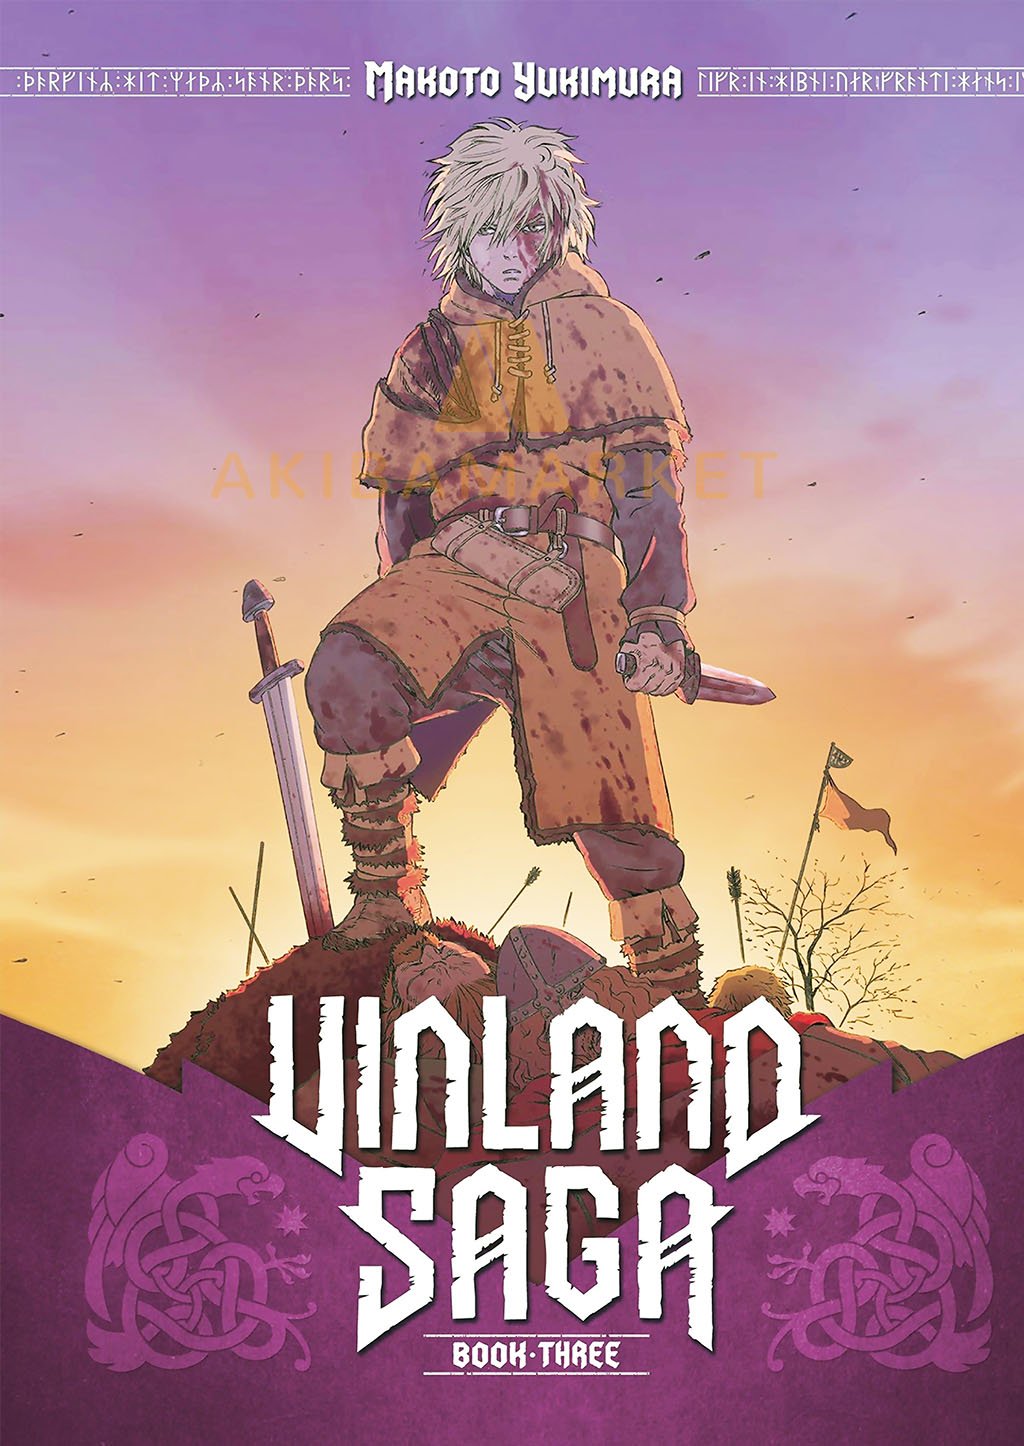 Poster de Vinland Saga 2